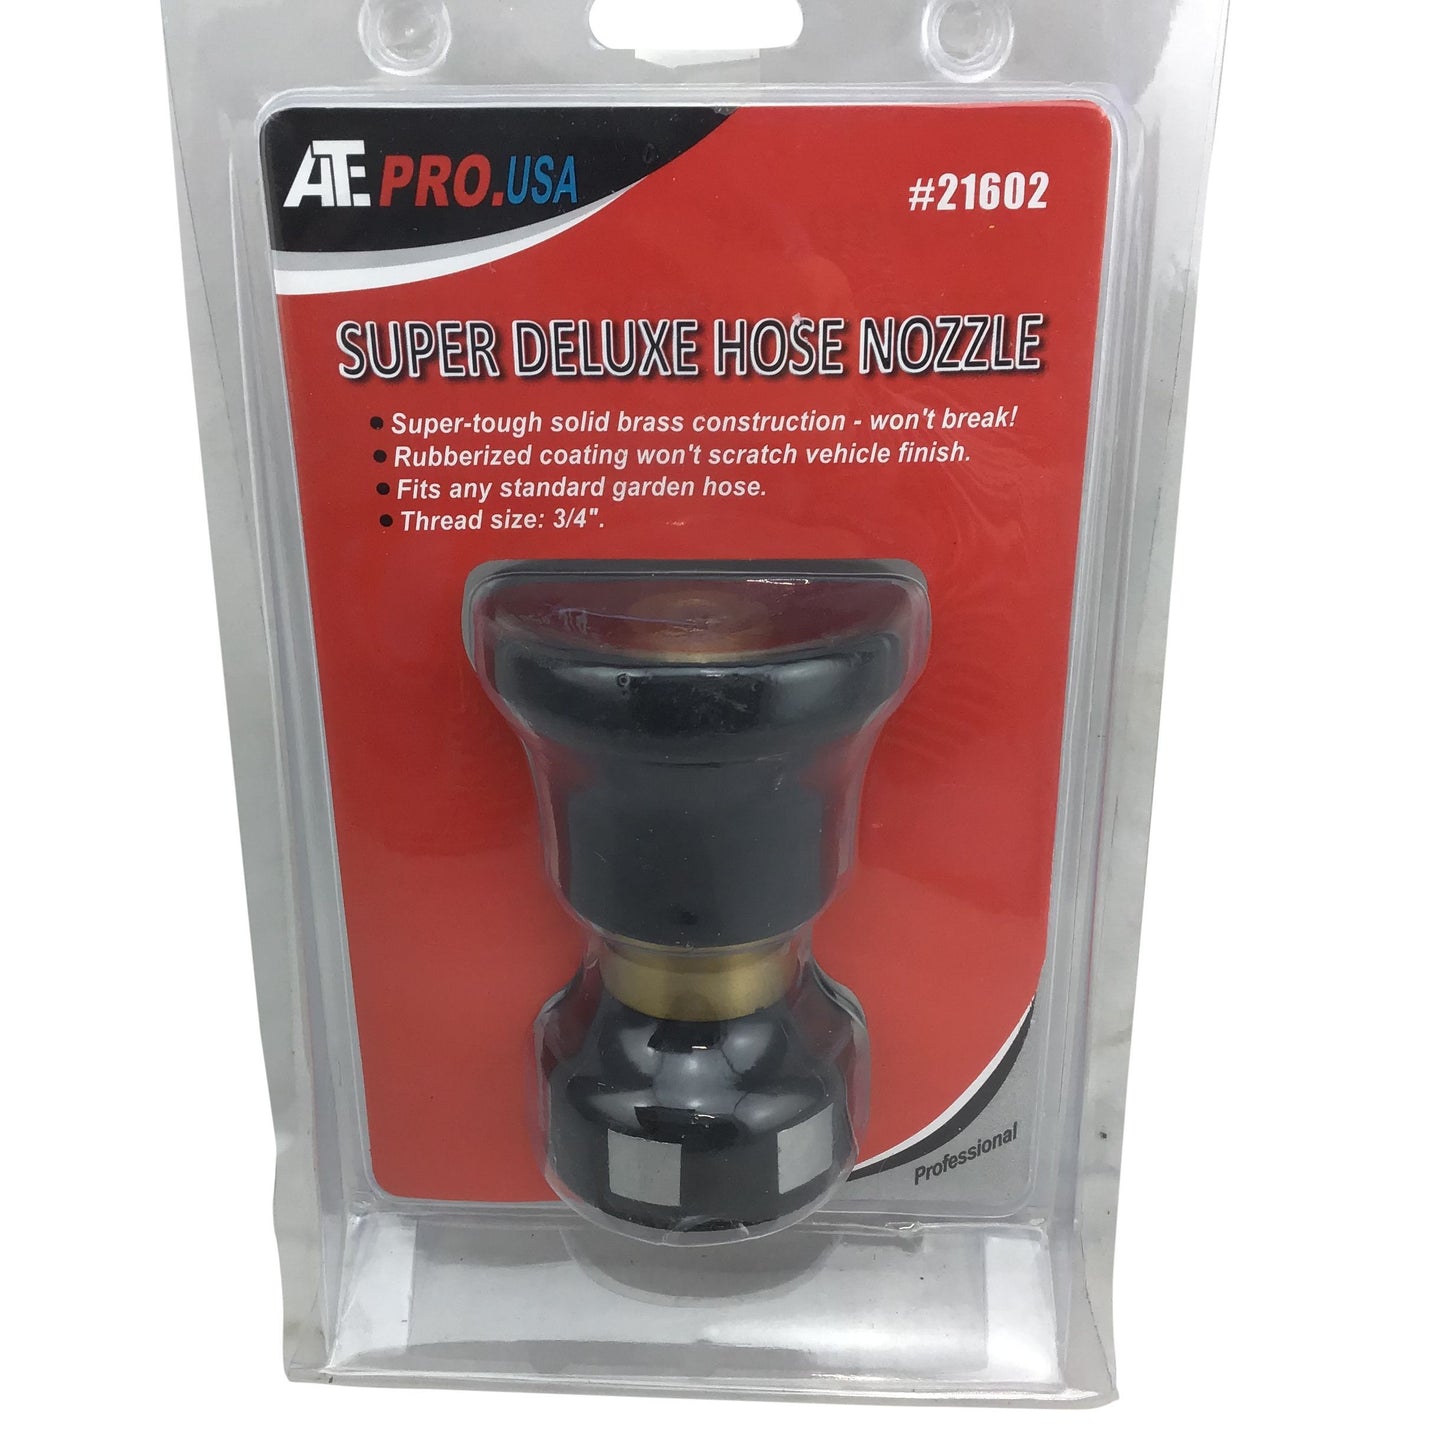 ATE Pro USA Super Deluxe Hose Nozzle